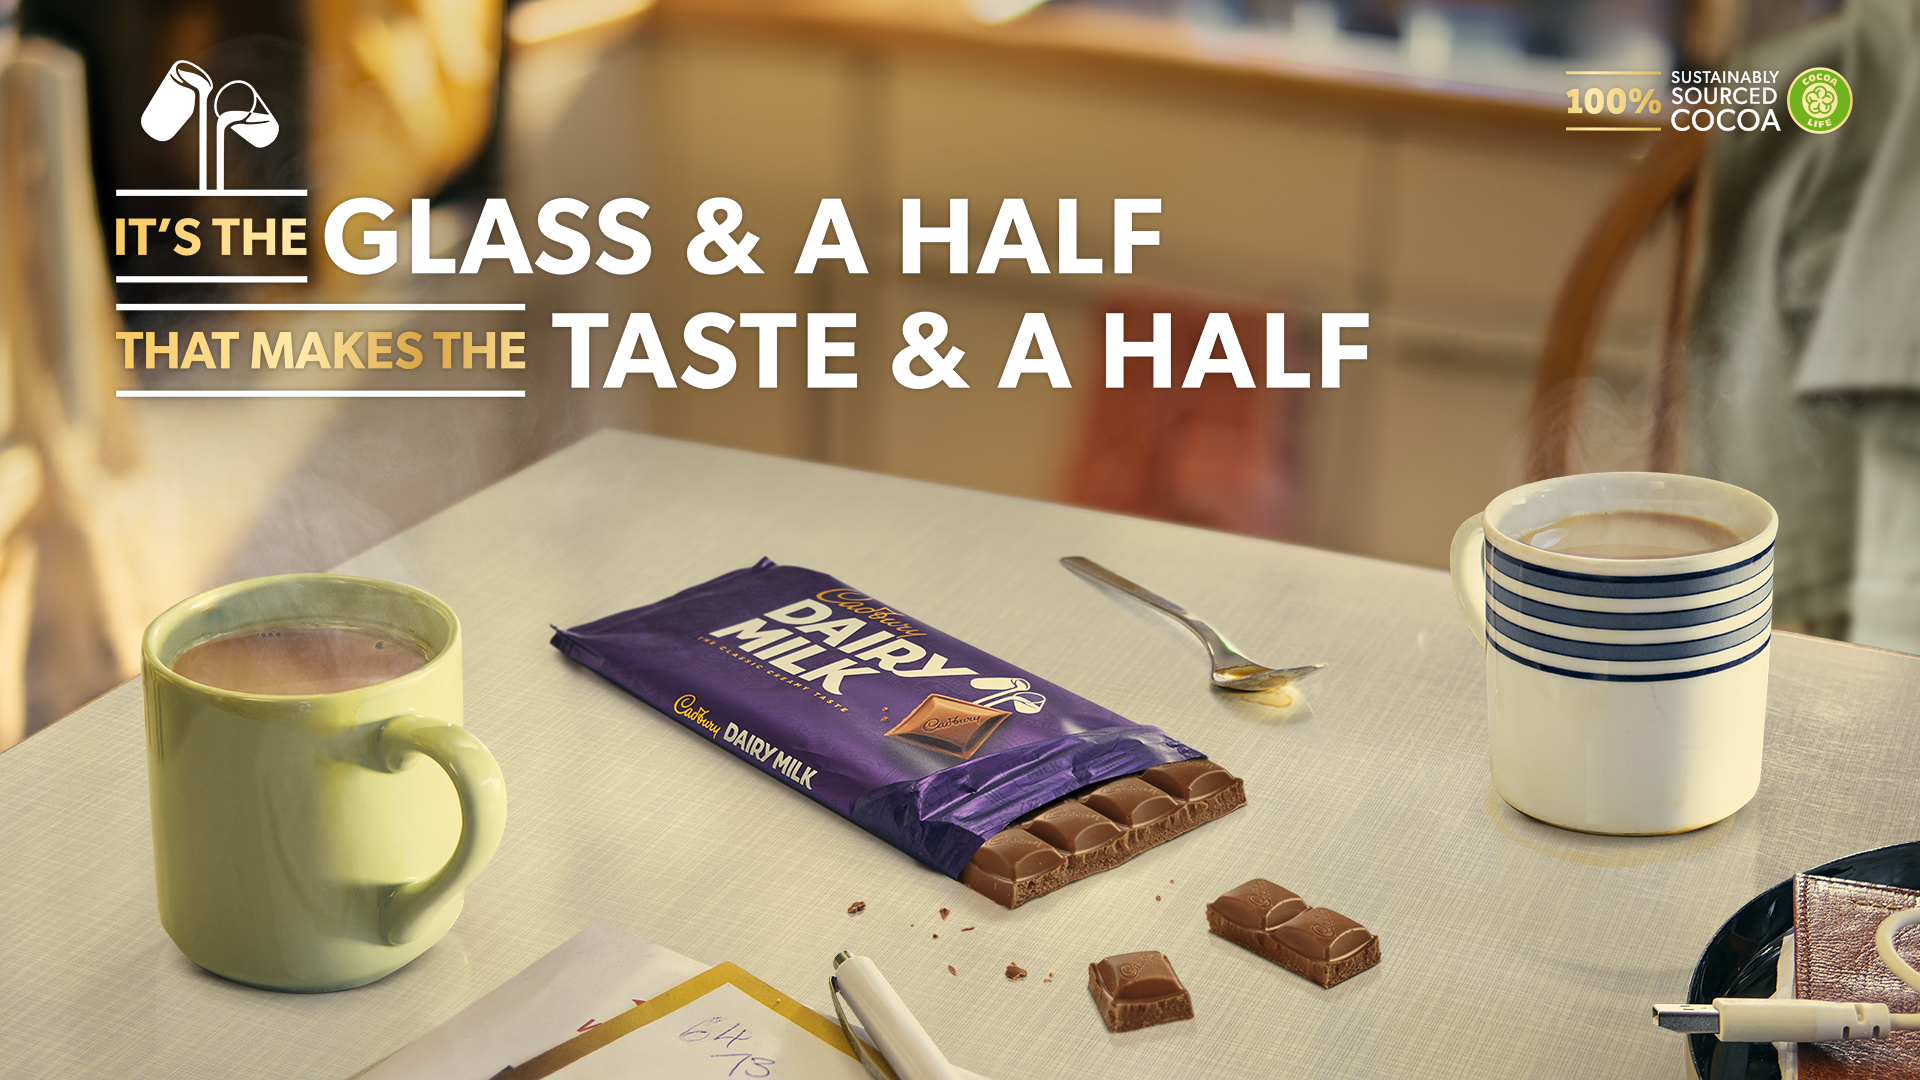 Cadbury Dairy Milk launches taste-led campaign